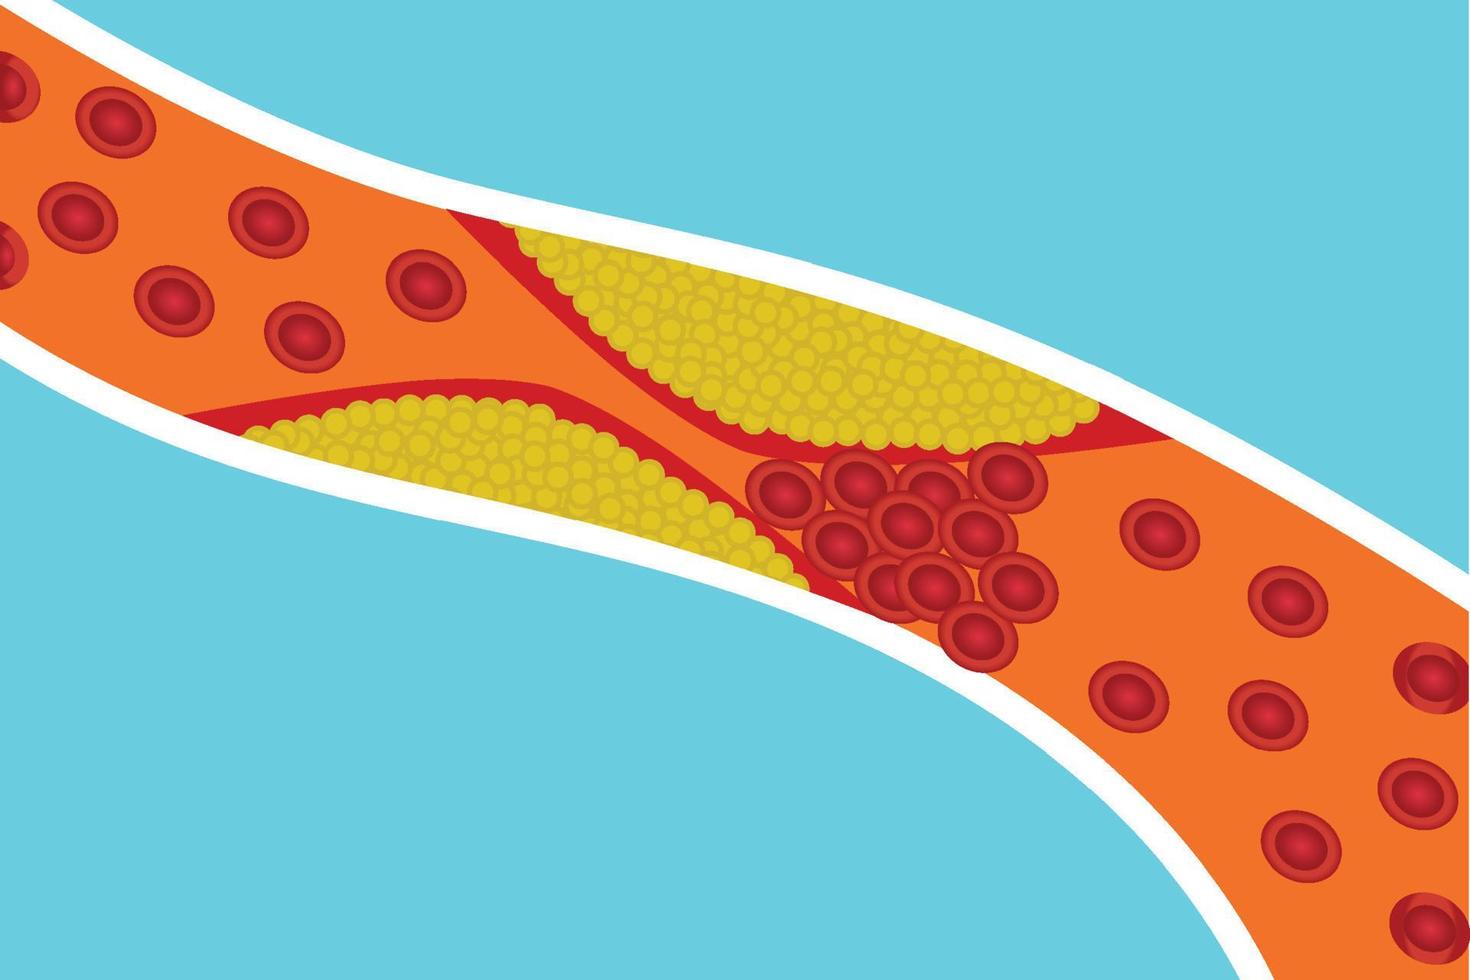 los vasos sanguíneos están bloqueados por grasa corporal adicional. los glóbulos rojos están bloqueados por grasa amarilla dentro de una arteria. ilustración vectorial del concepto de anatomía humana y coagulación de la sangre. enfermedades cardíacas. vector